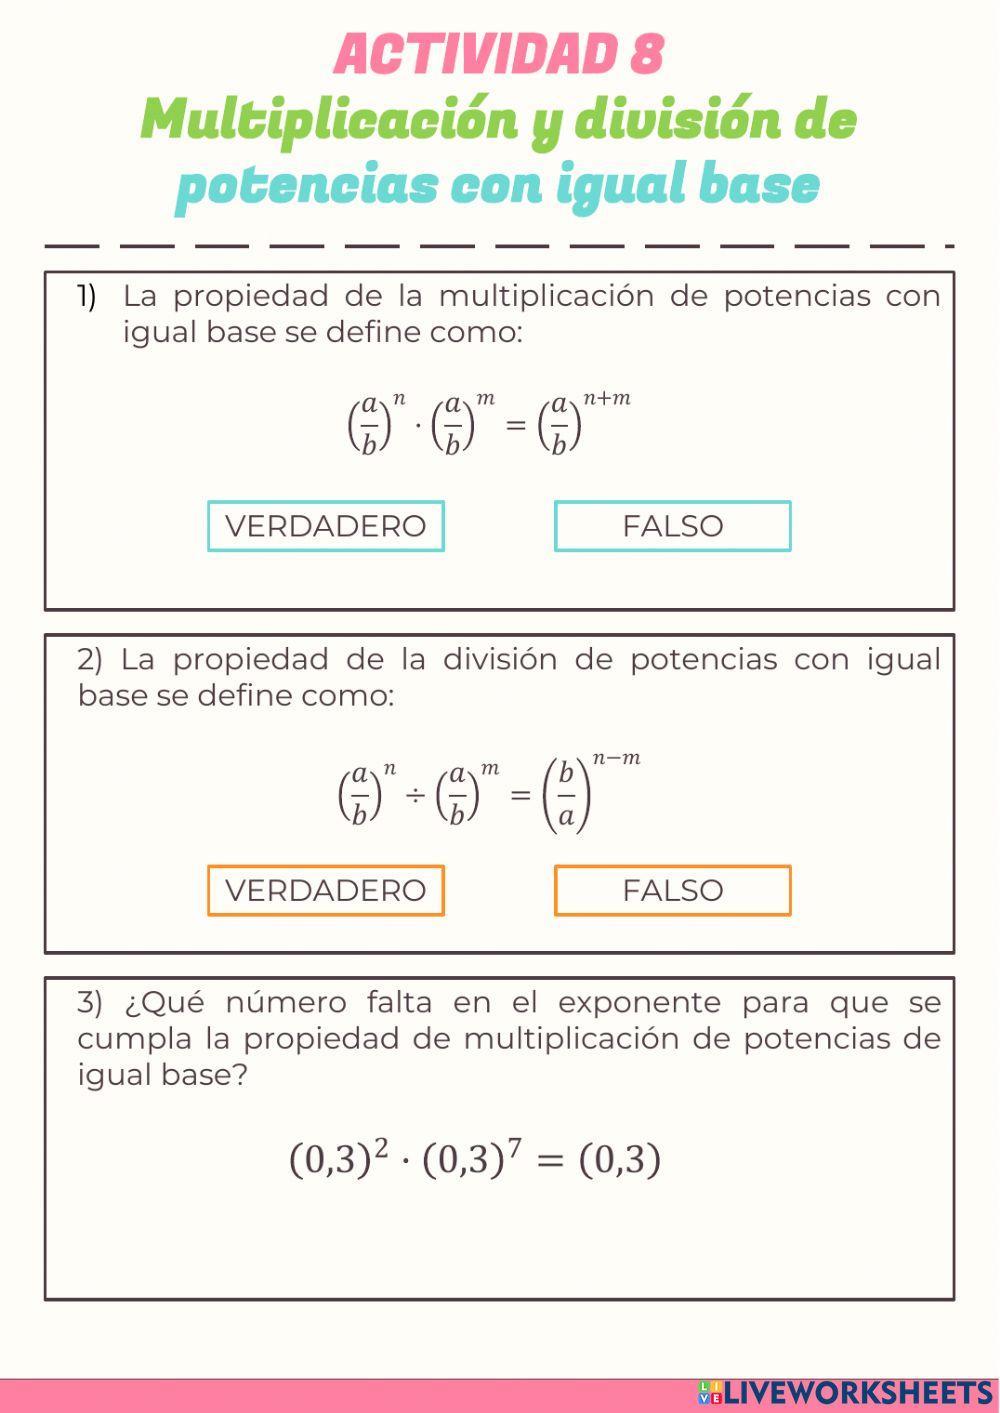 ACTIVIDAD 8 - Multiplicación y división de potencias con igual base